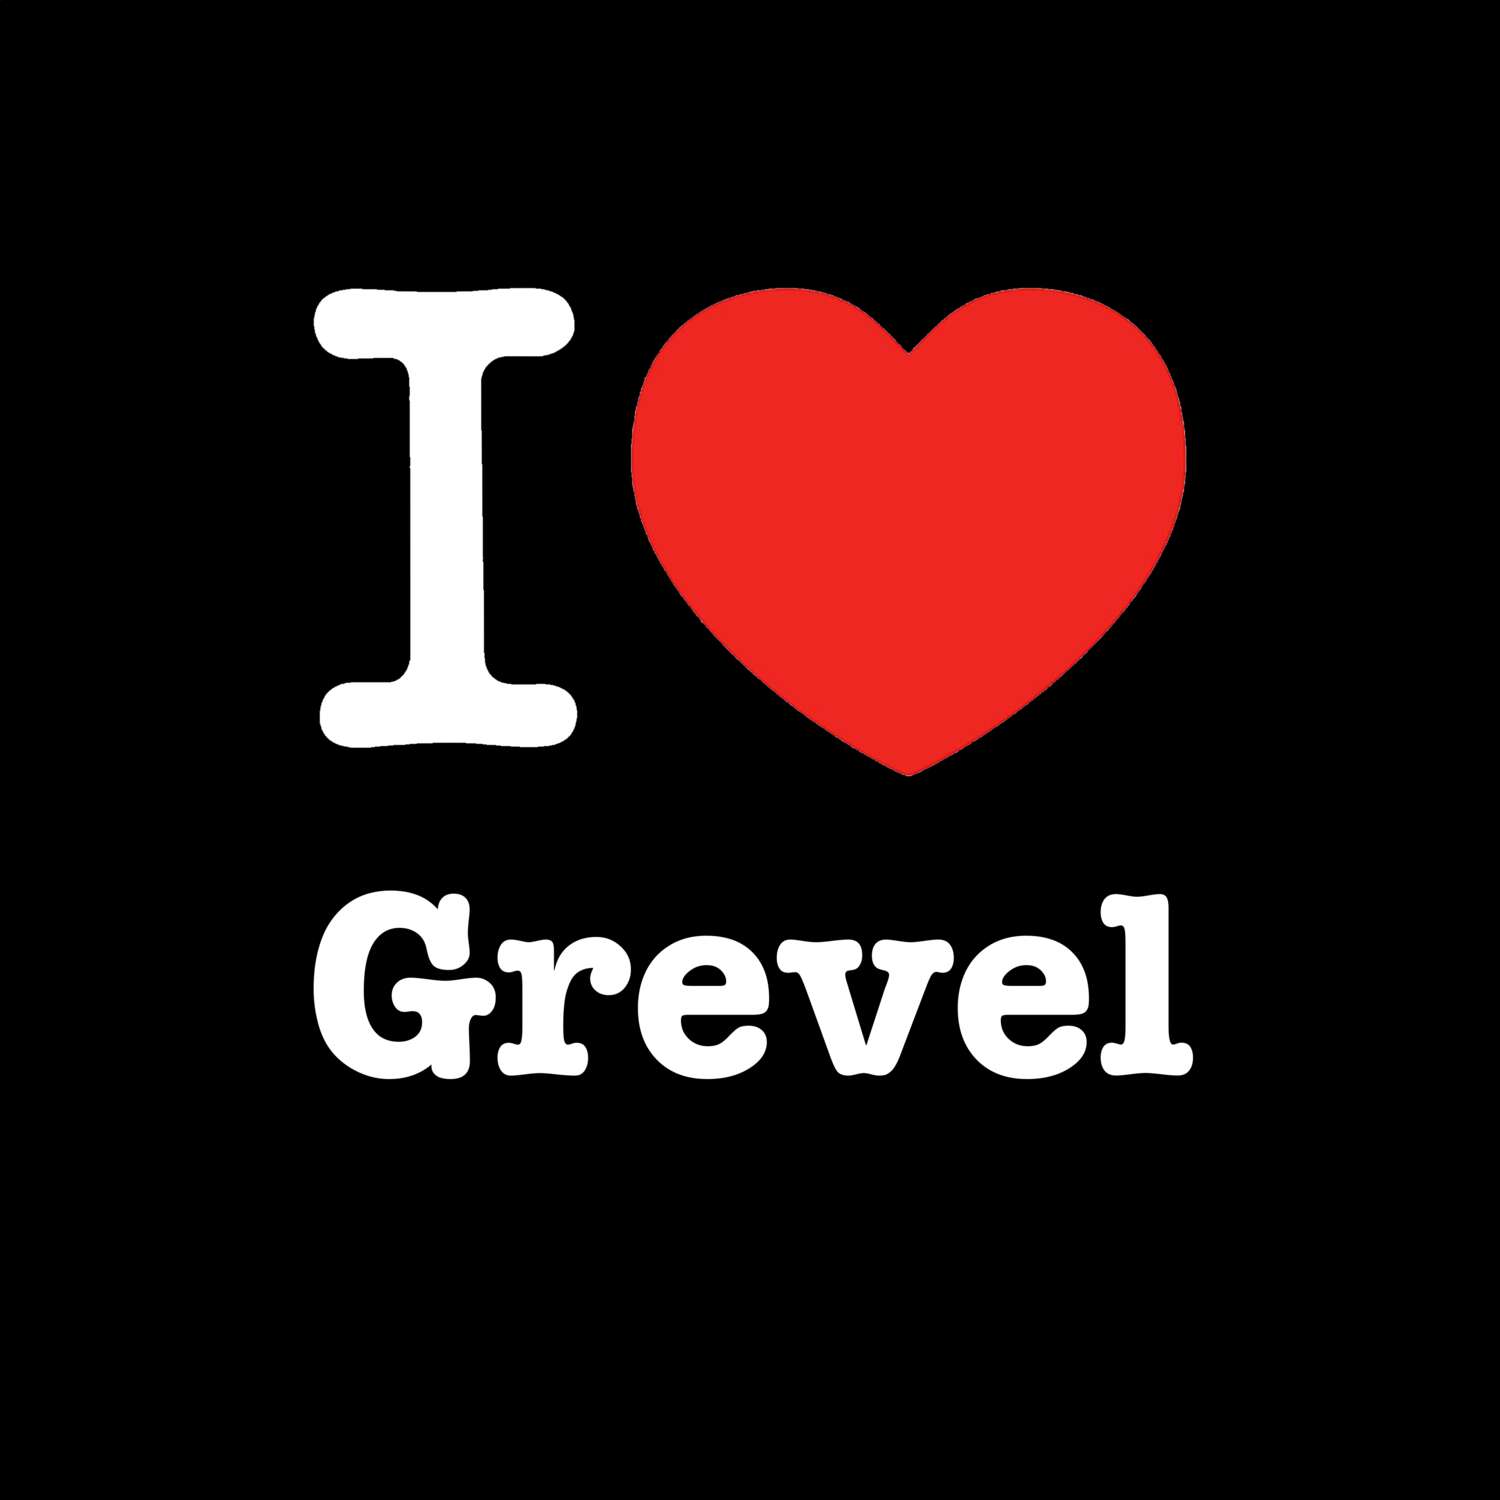 Grevel T-Shirt »I love«